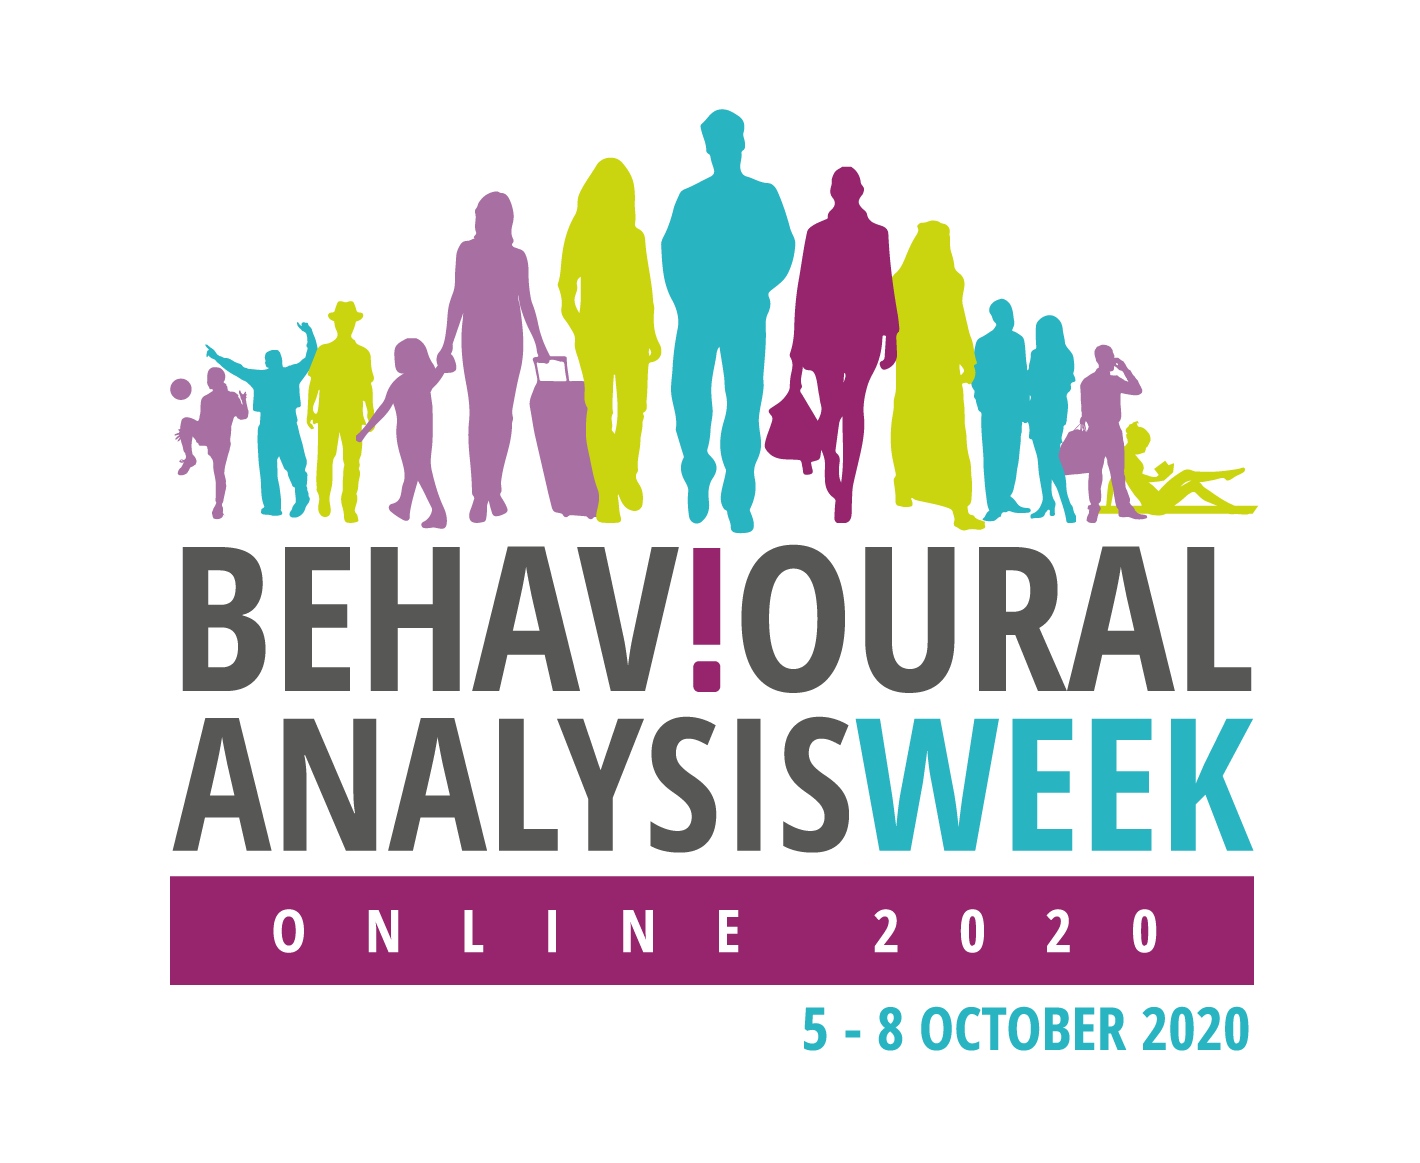 Behavioural Analysis Week Online 2020, London, United Kingdom